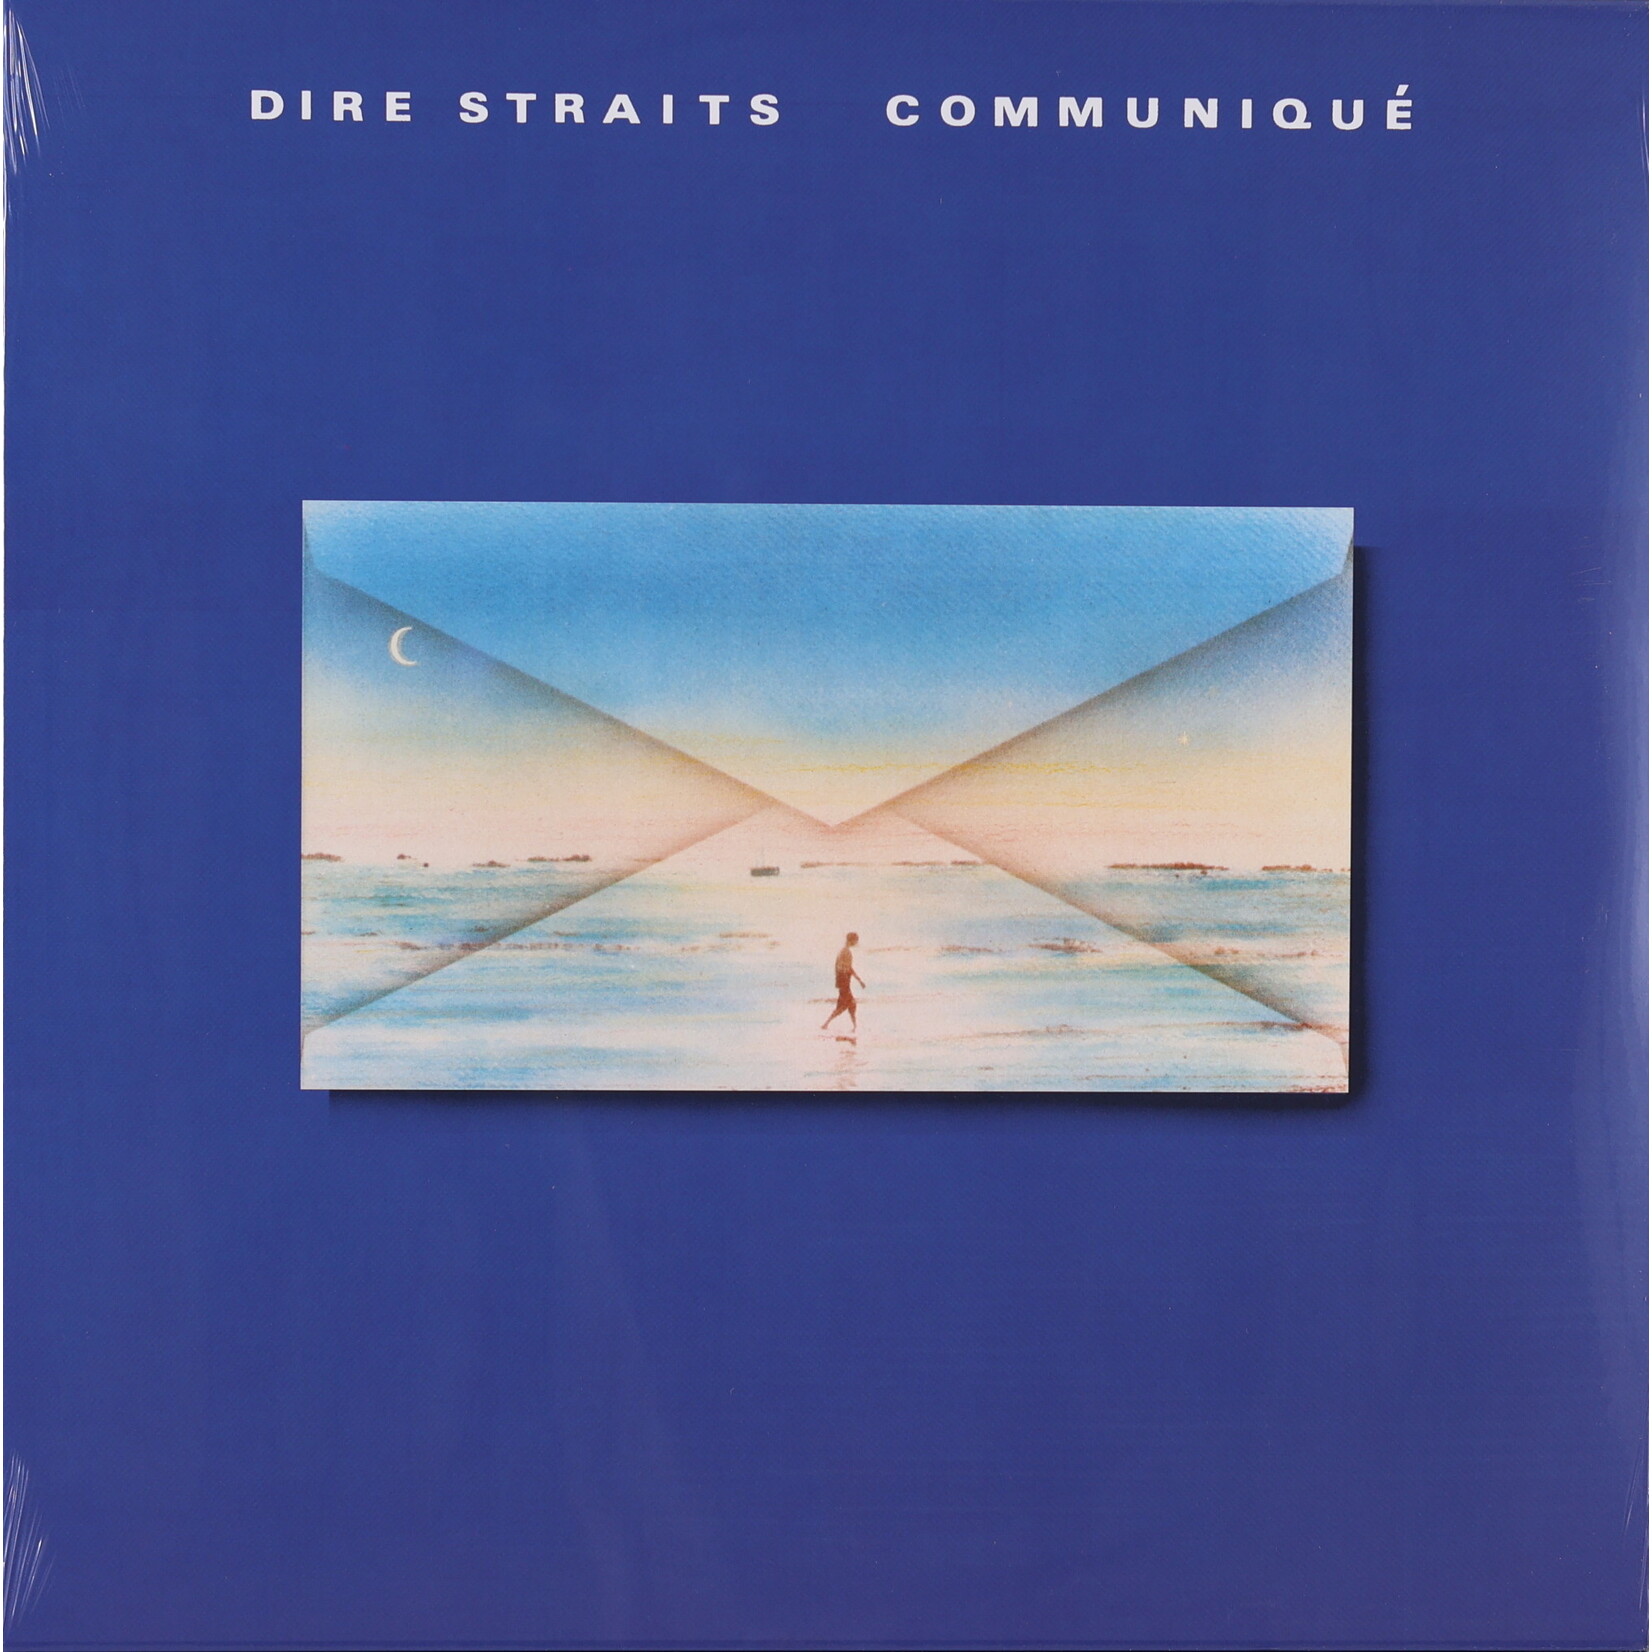 DIRE STRAITS - COMMUNIQUE - LP + DOWNLOAD CODE